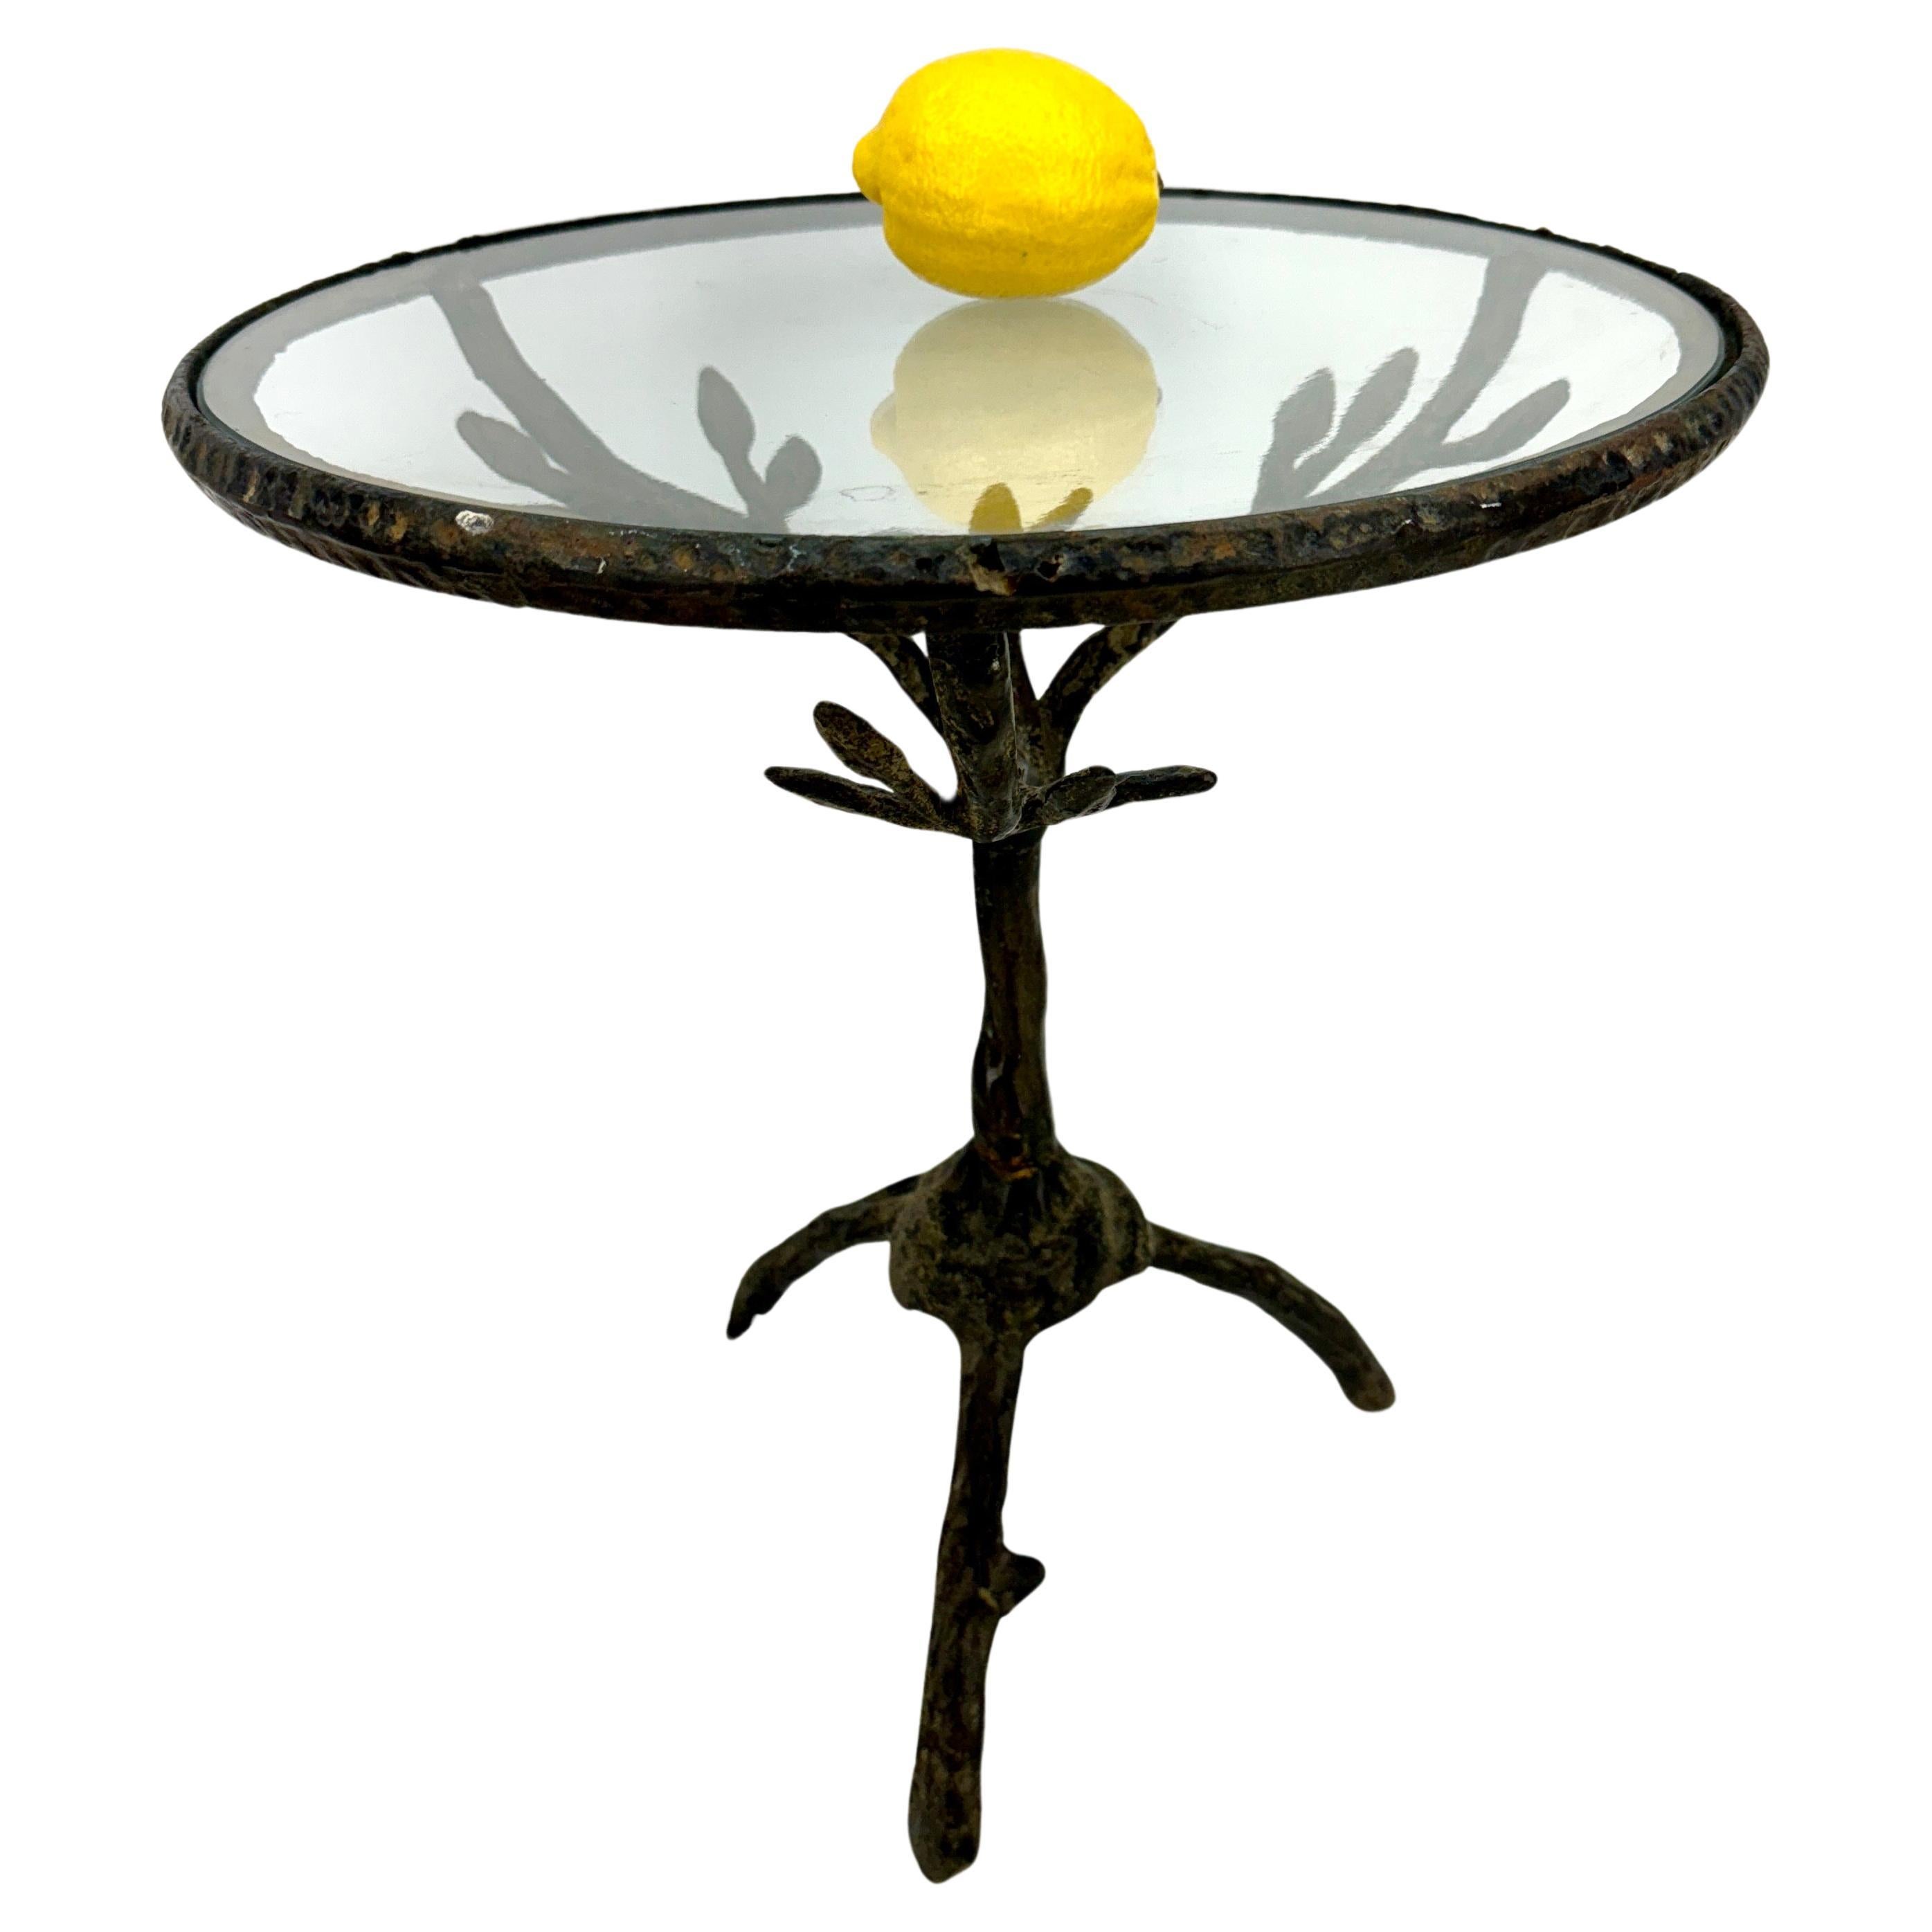  Table d'appoint en fonte avec plateau en verre rond

Table en métal unique du milieu du siècle, fabriquée à la main, avec des branches et un oiseau, parfaite pour une utilisation formelle ou informelle. Cette table polyvalente et attrayante sera